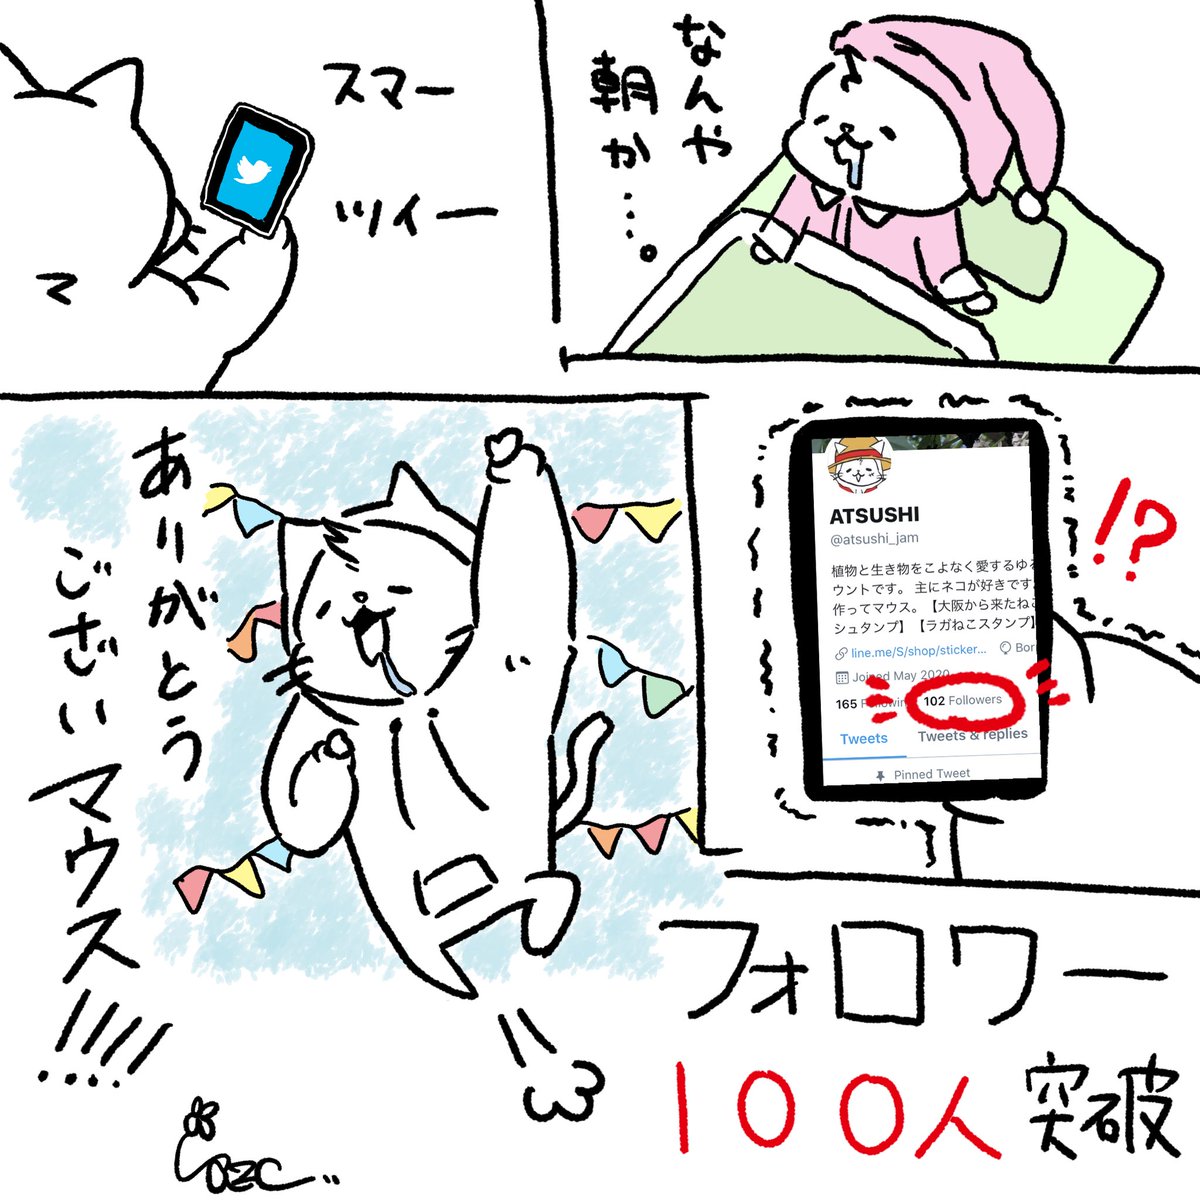 祝⭐️フォロワー100人!!
ありがとうございマウス

いいねやRT、フォローなど、とても励みになります?
#イラスト #大阪ねこ 